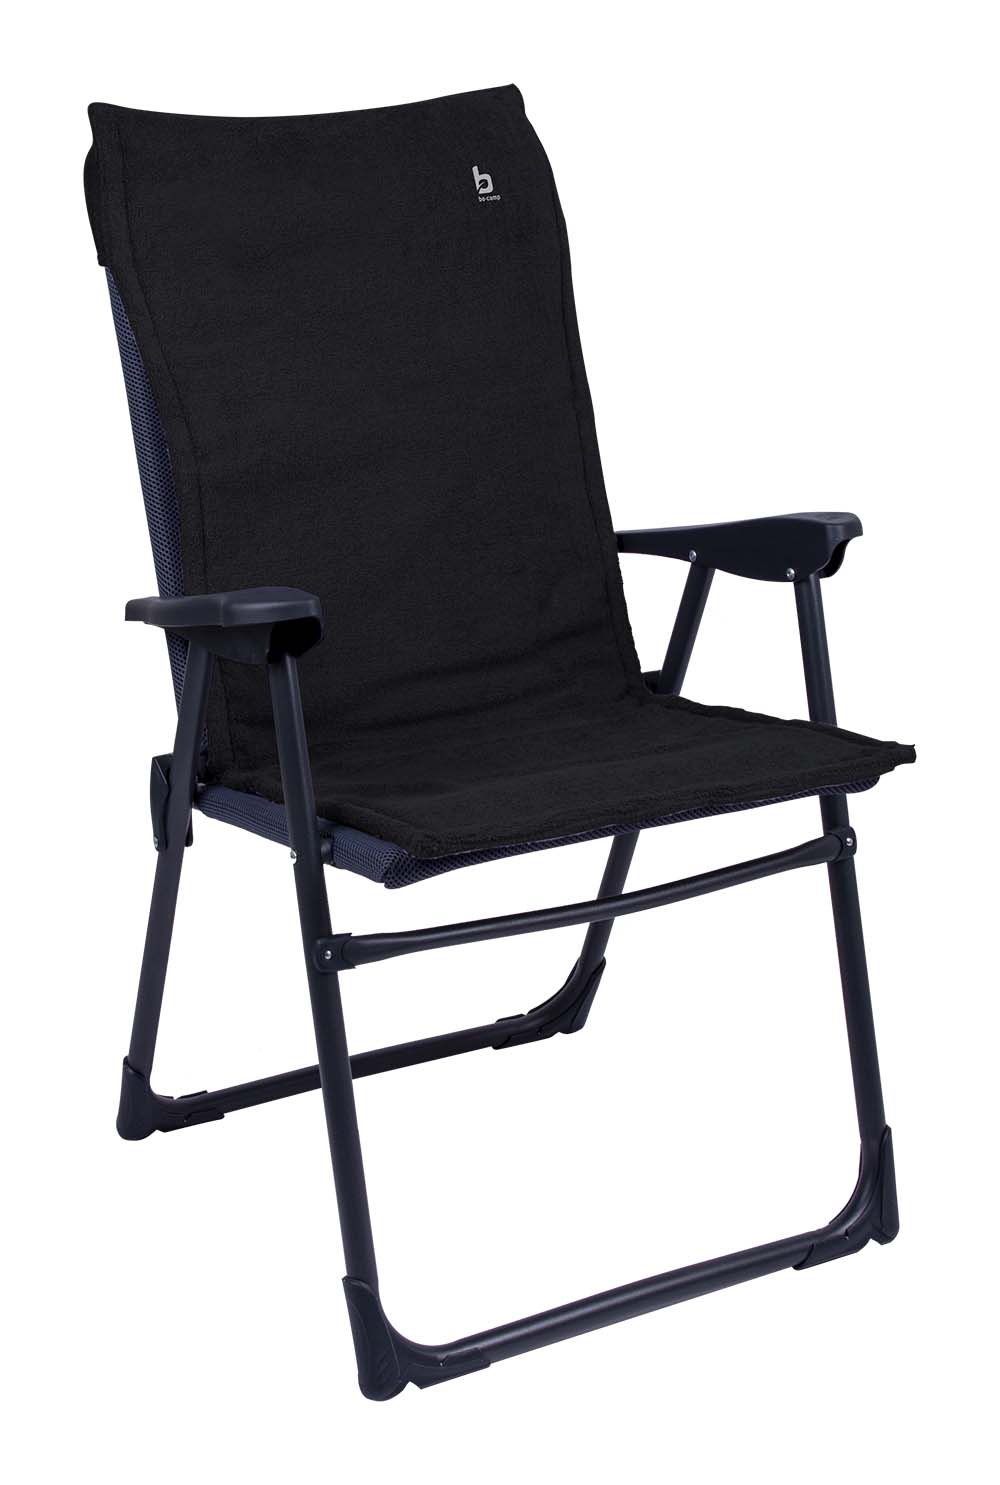 1849268 Een extra zachte stoelhoes voor compacte (kampeer)stoelen. Deze universele stoelhoes zorgt voor optimaal zitcomfort en biedt bescherming aan de stoel (bijvoorbeeld de Copa Rio). Extra comfortabel door het gepolsterde badstof.